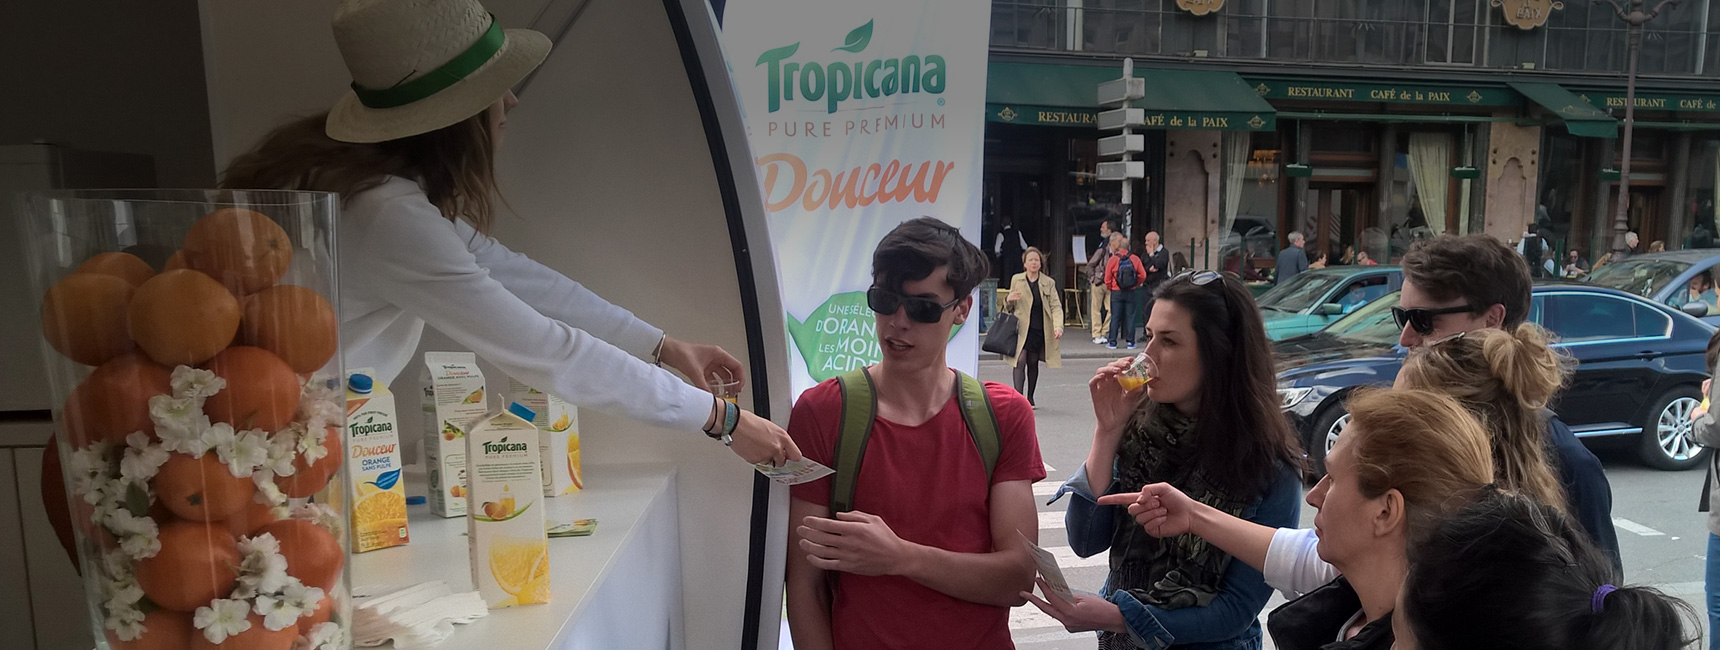 La tournée événementielle de Tropicana pour sa nouvelle boisson Tropicana Douceur - Keemia Shopper Marketing - Agence d'activation shopper marketing phygitale